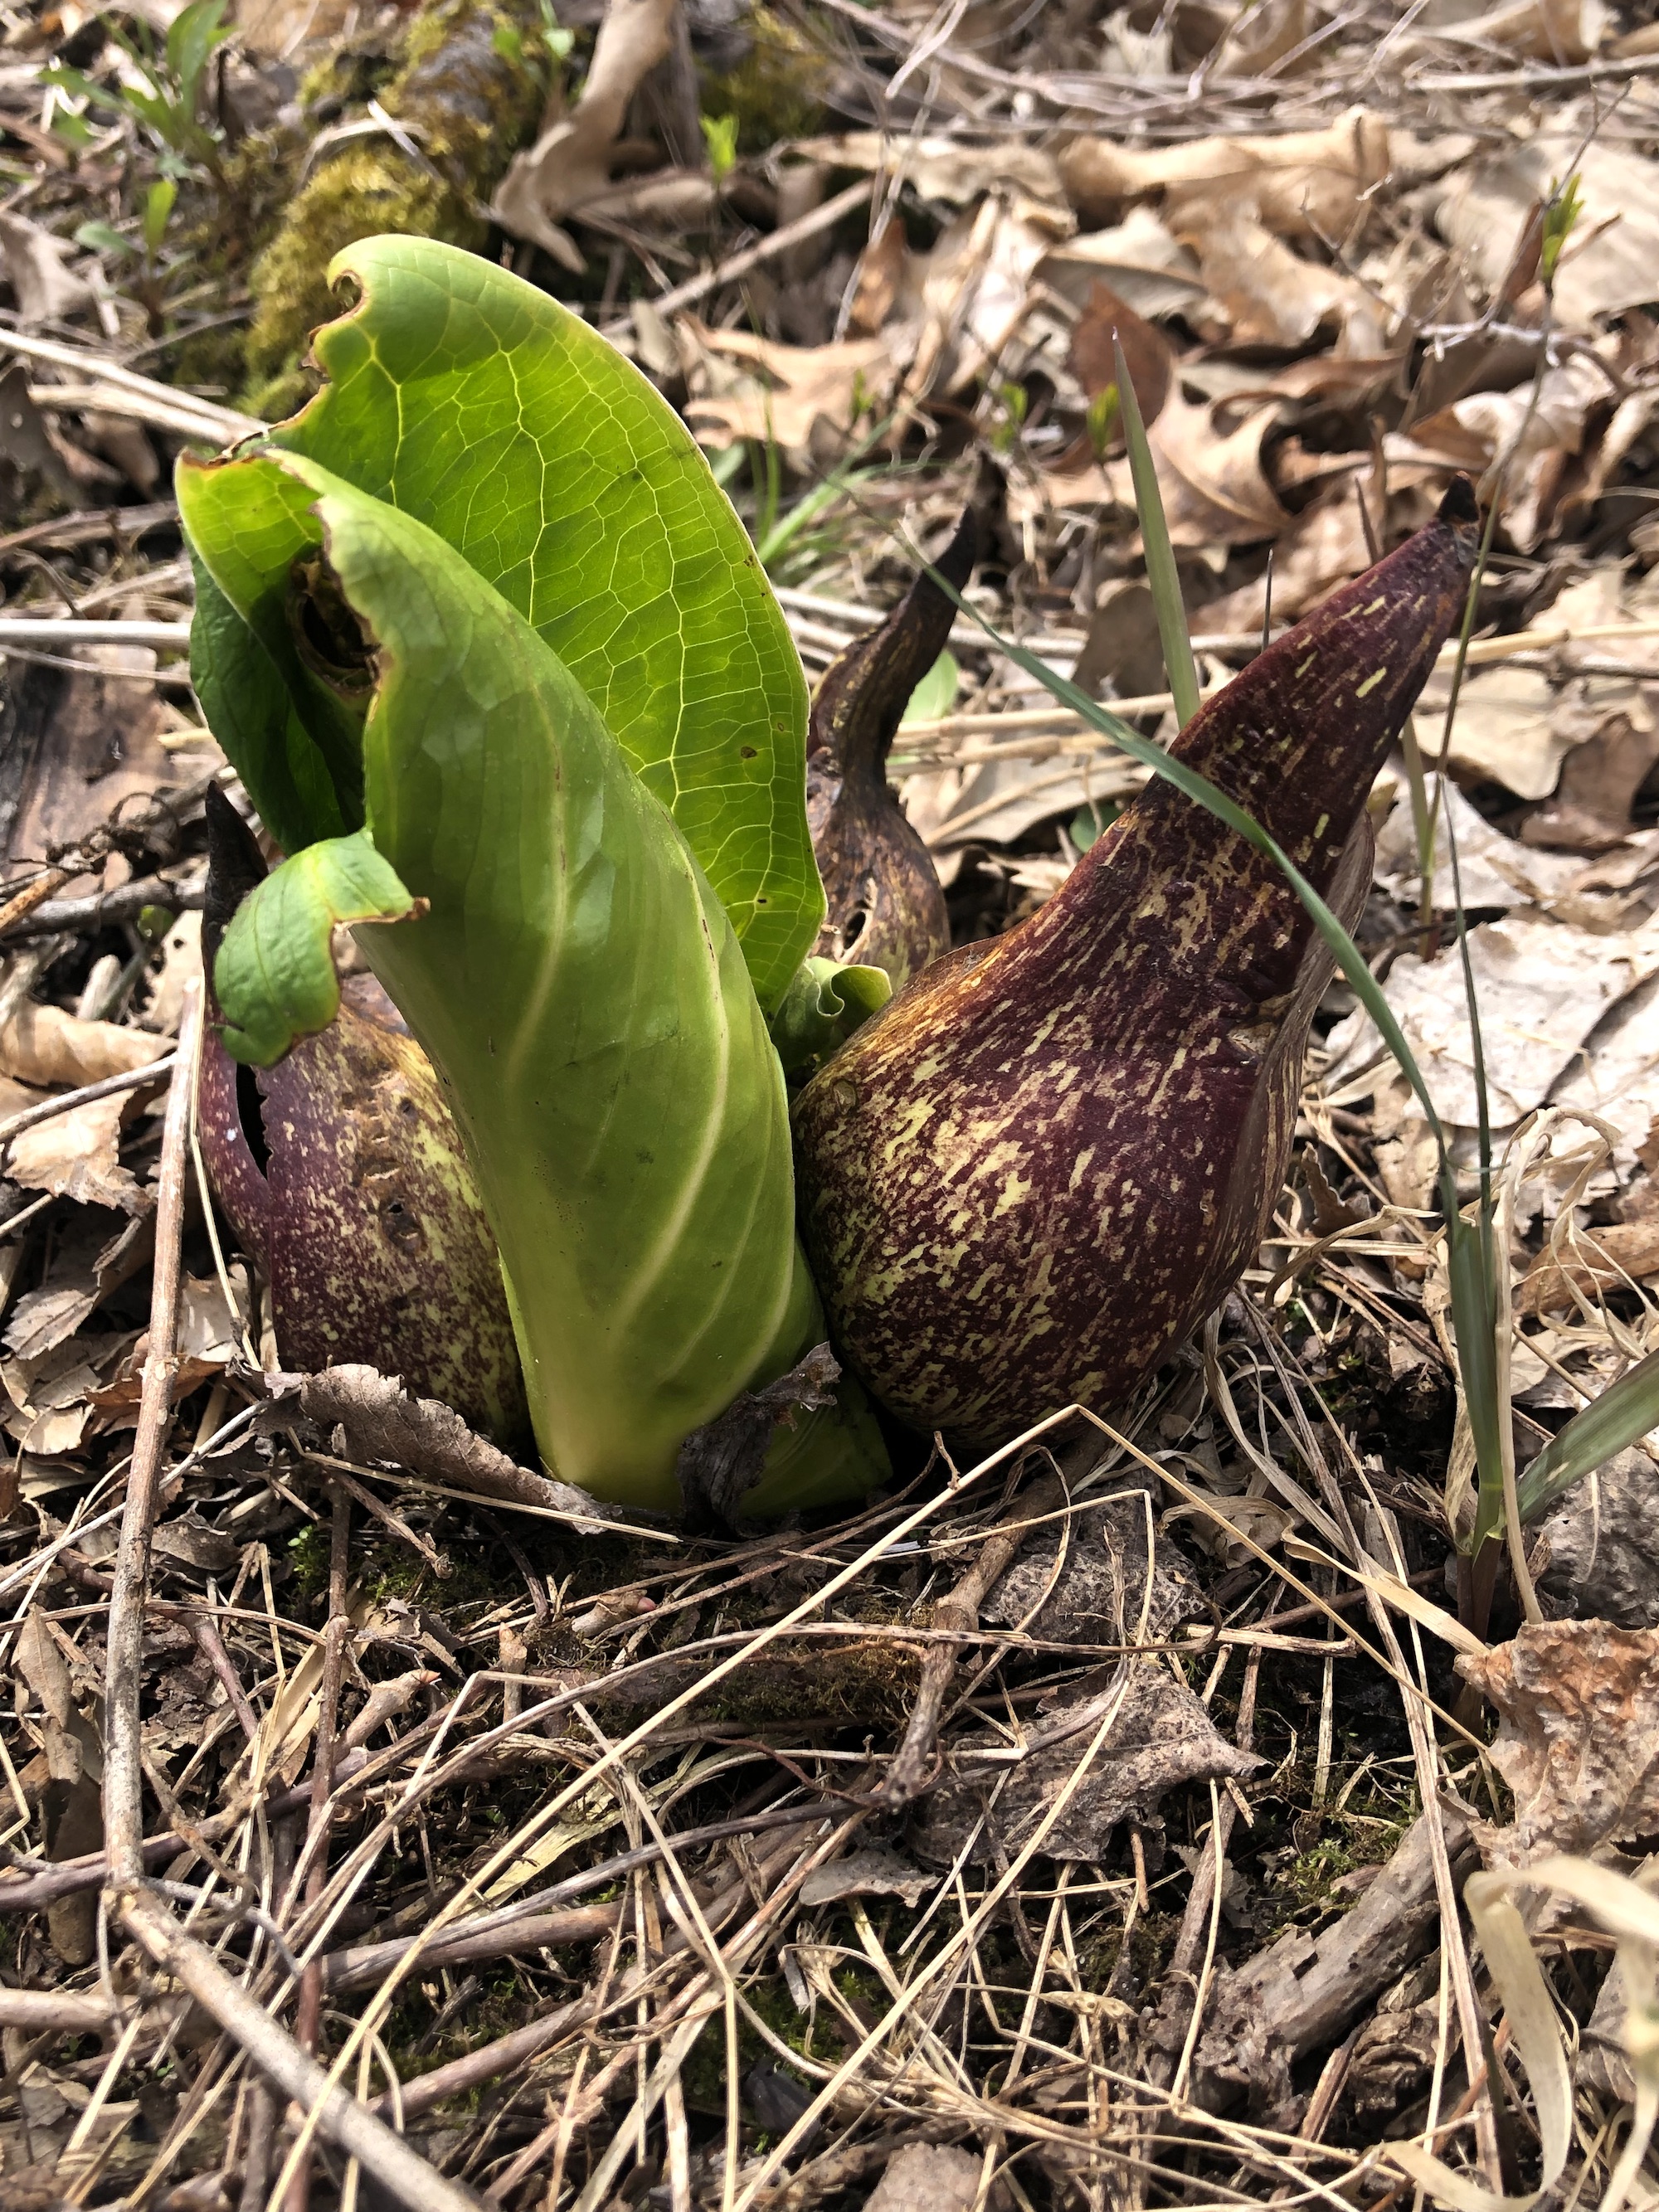 Skunk Cabbage in UW-Madison Arboretum on April 29, 2022.